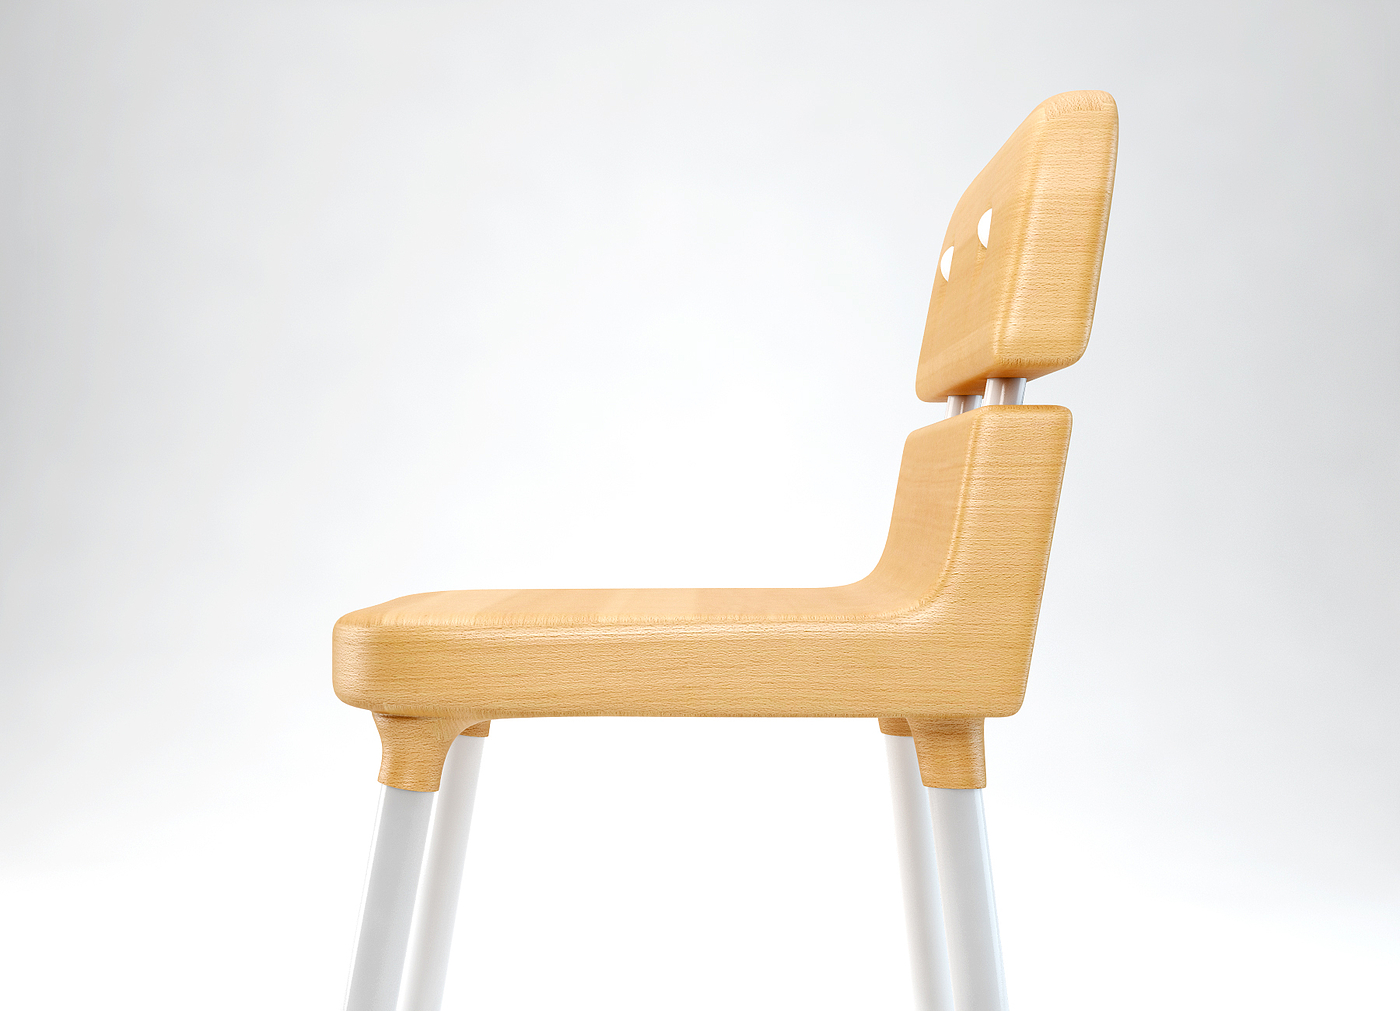 KA 32，椅子设计，产品设计，现代美学，